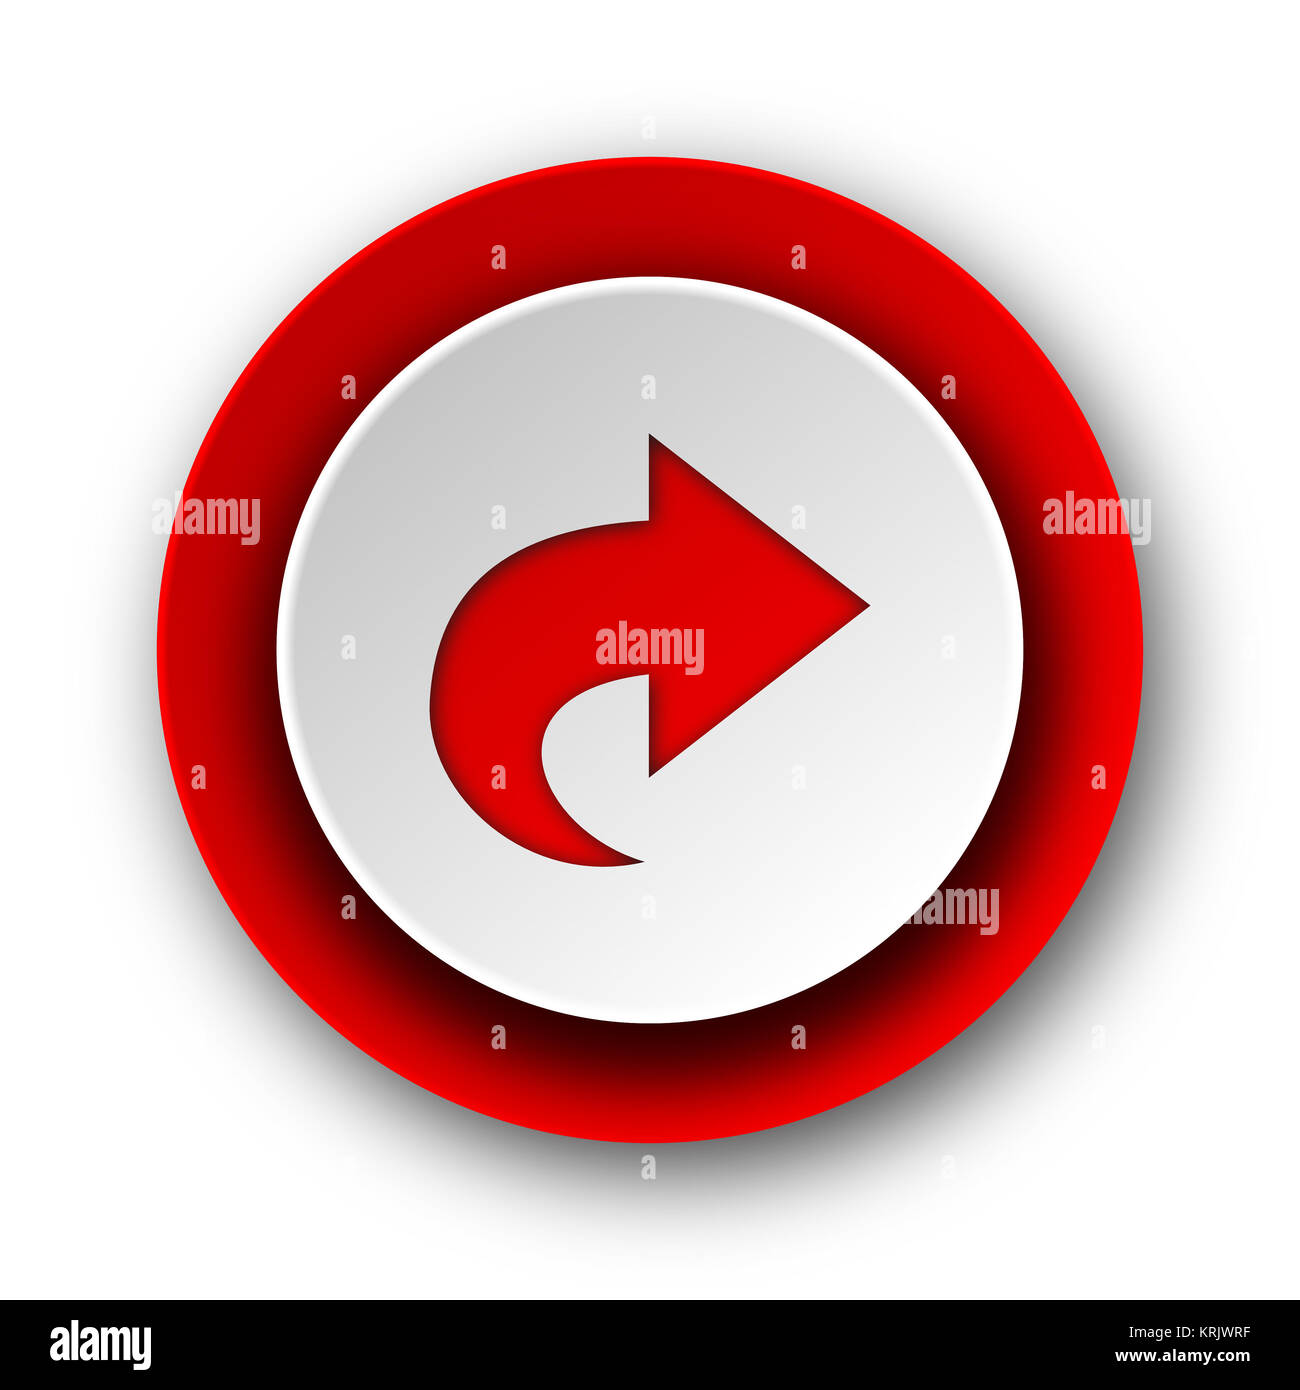 L'icône suivante web moderne rouge sur fond blanc Banque D'Images